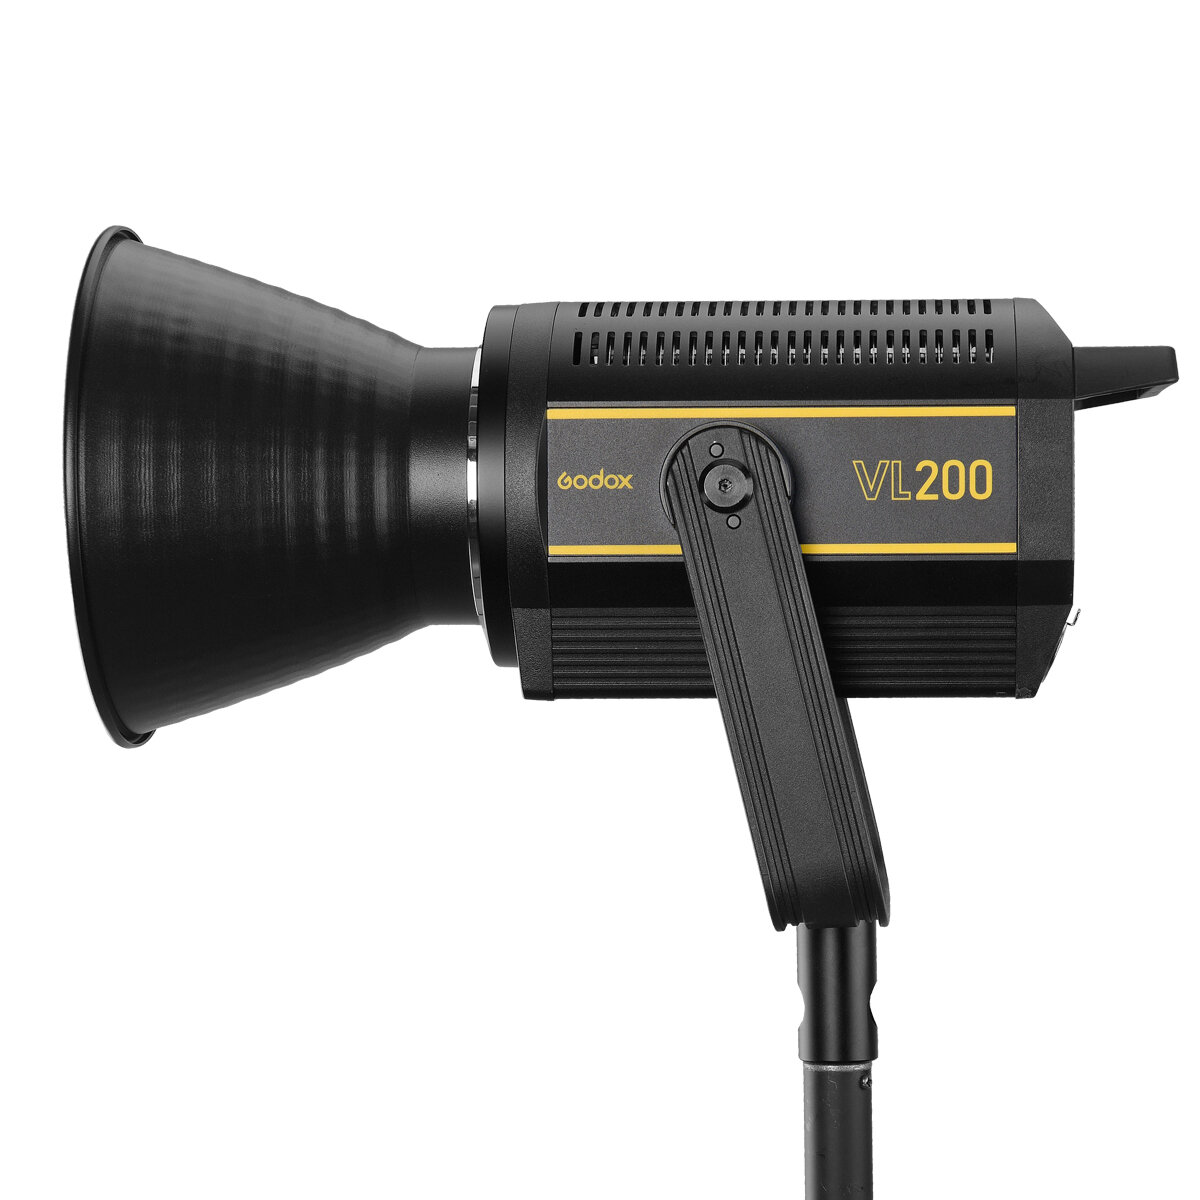 Осветитель светодиодный Godox VL200 (без пульта) осветитель светодиодный с функцией вспышки godox lf308bi накамерный без пульта